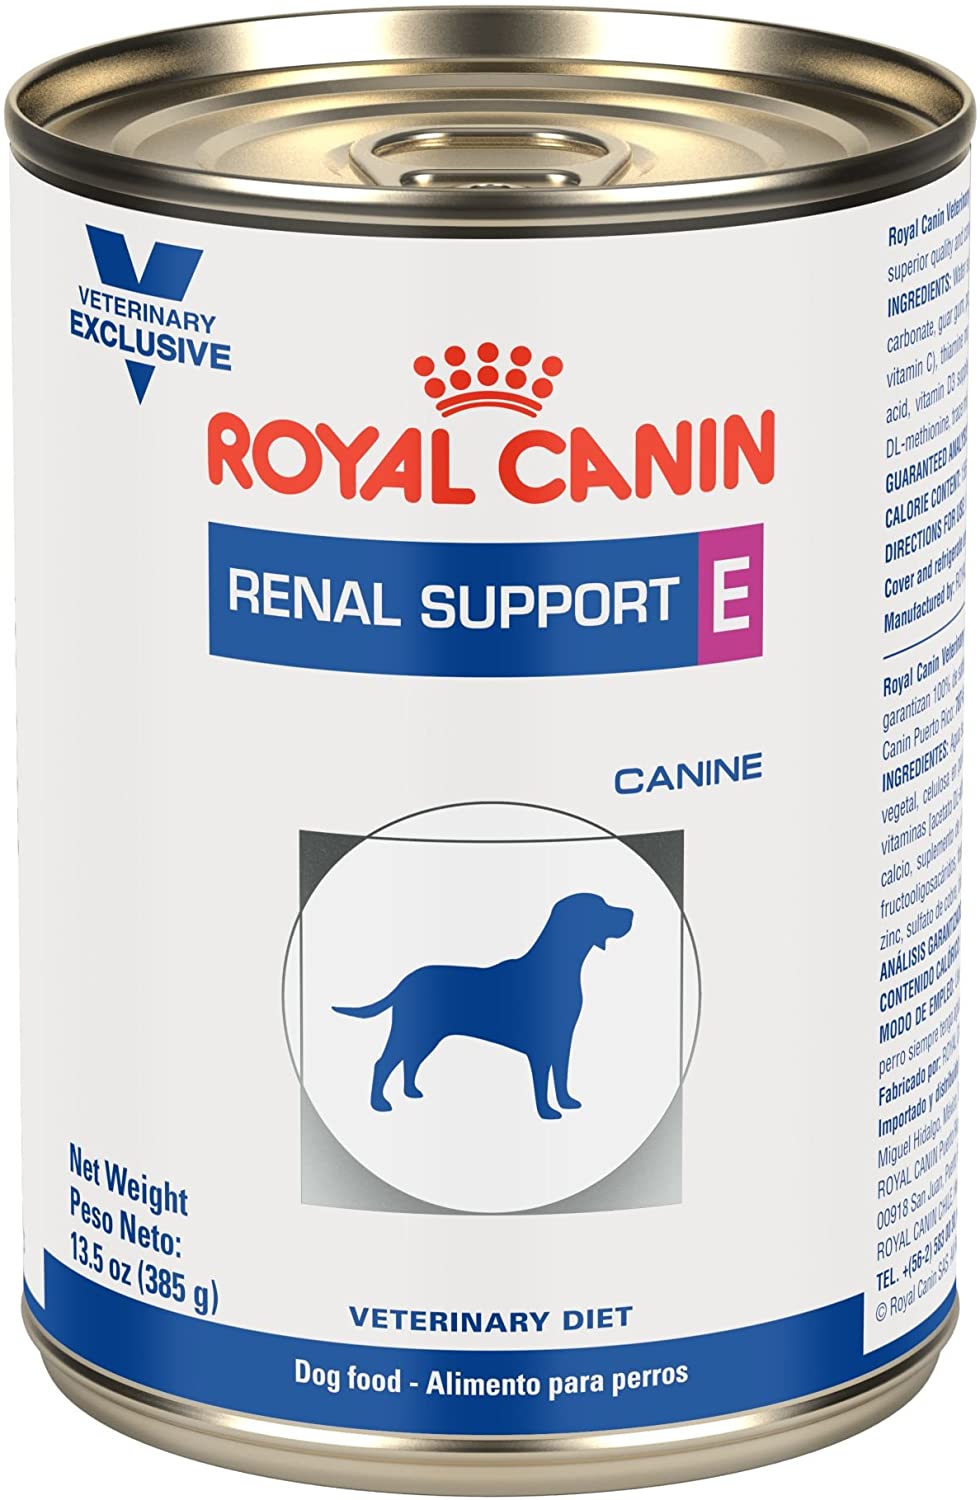 Royal Canin Prescripción Alimento Húmedo Renal Support E Canine para Perro, 385 g